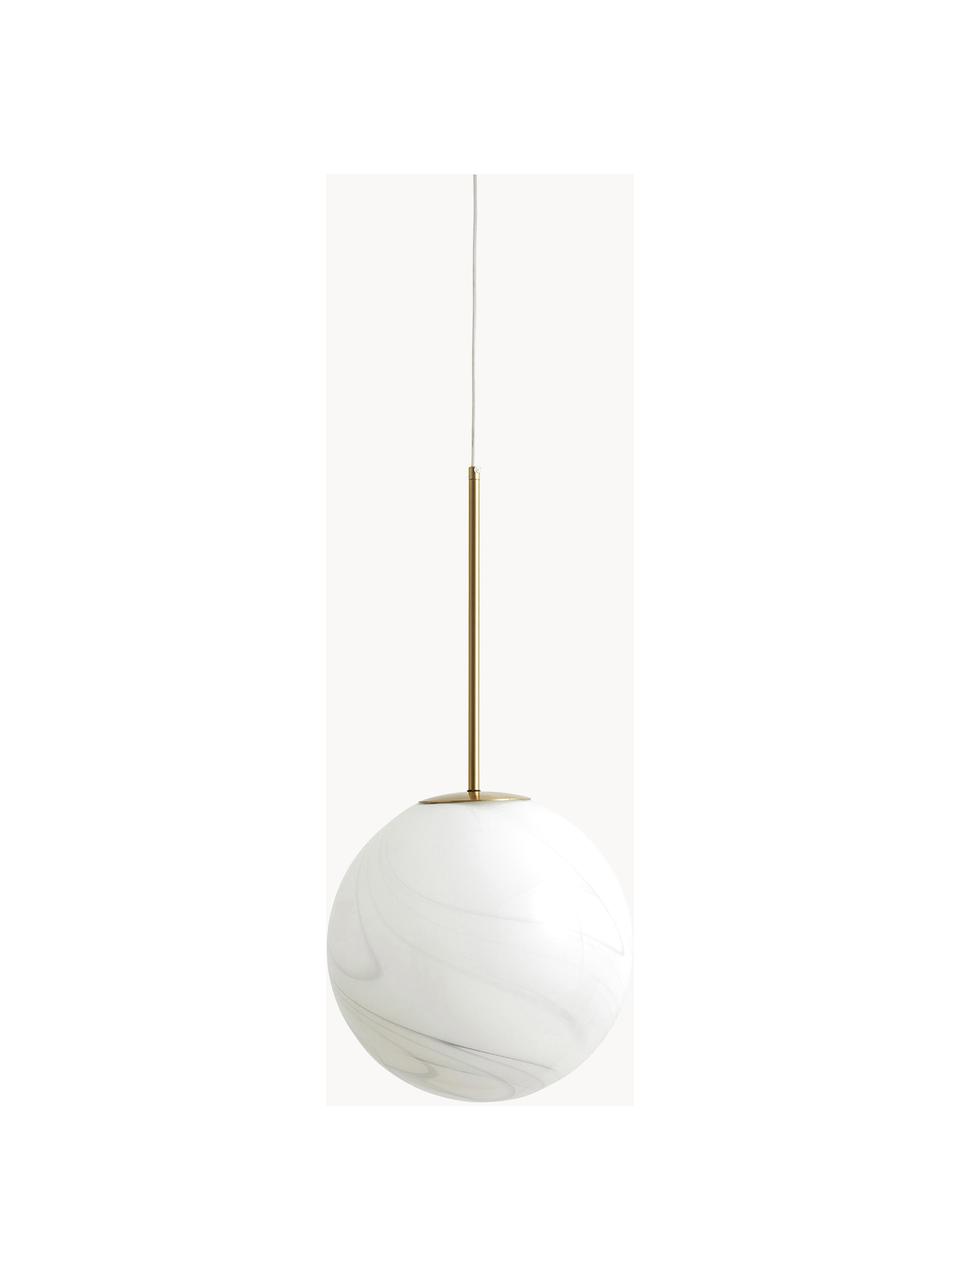 Lampada sferica piccola a sospensione Fauna, Baldacchino: metallo rivestito, Bianco marmorizzato, dorato, Ø 25 x Alt. 55 cm